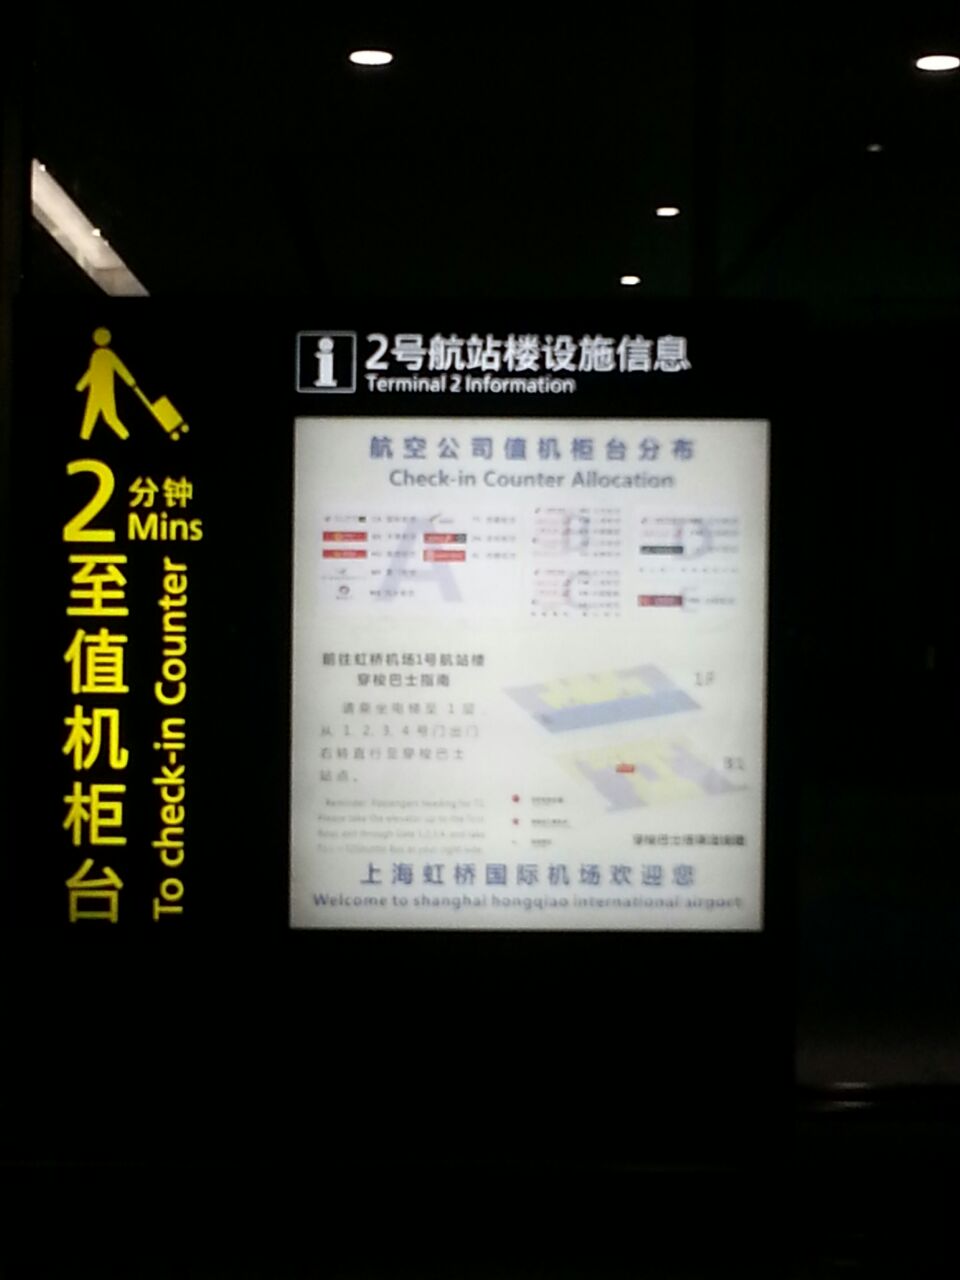 【携程攻略】上海上行书店(虹桥机场t2-25至27号登机口-1)购物,商品